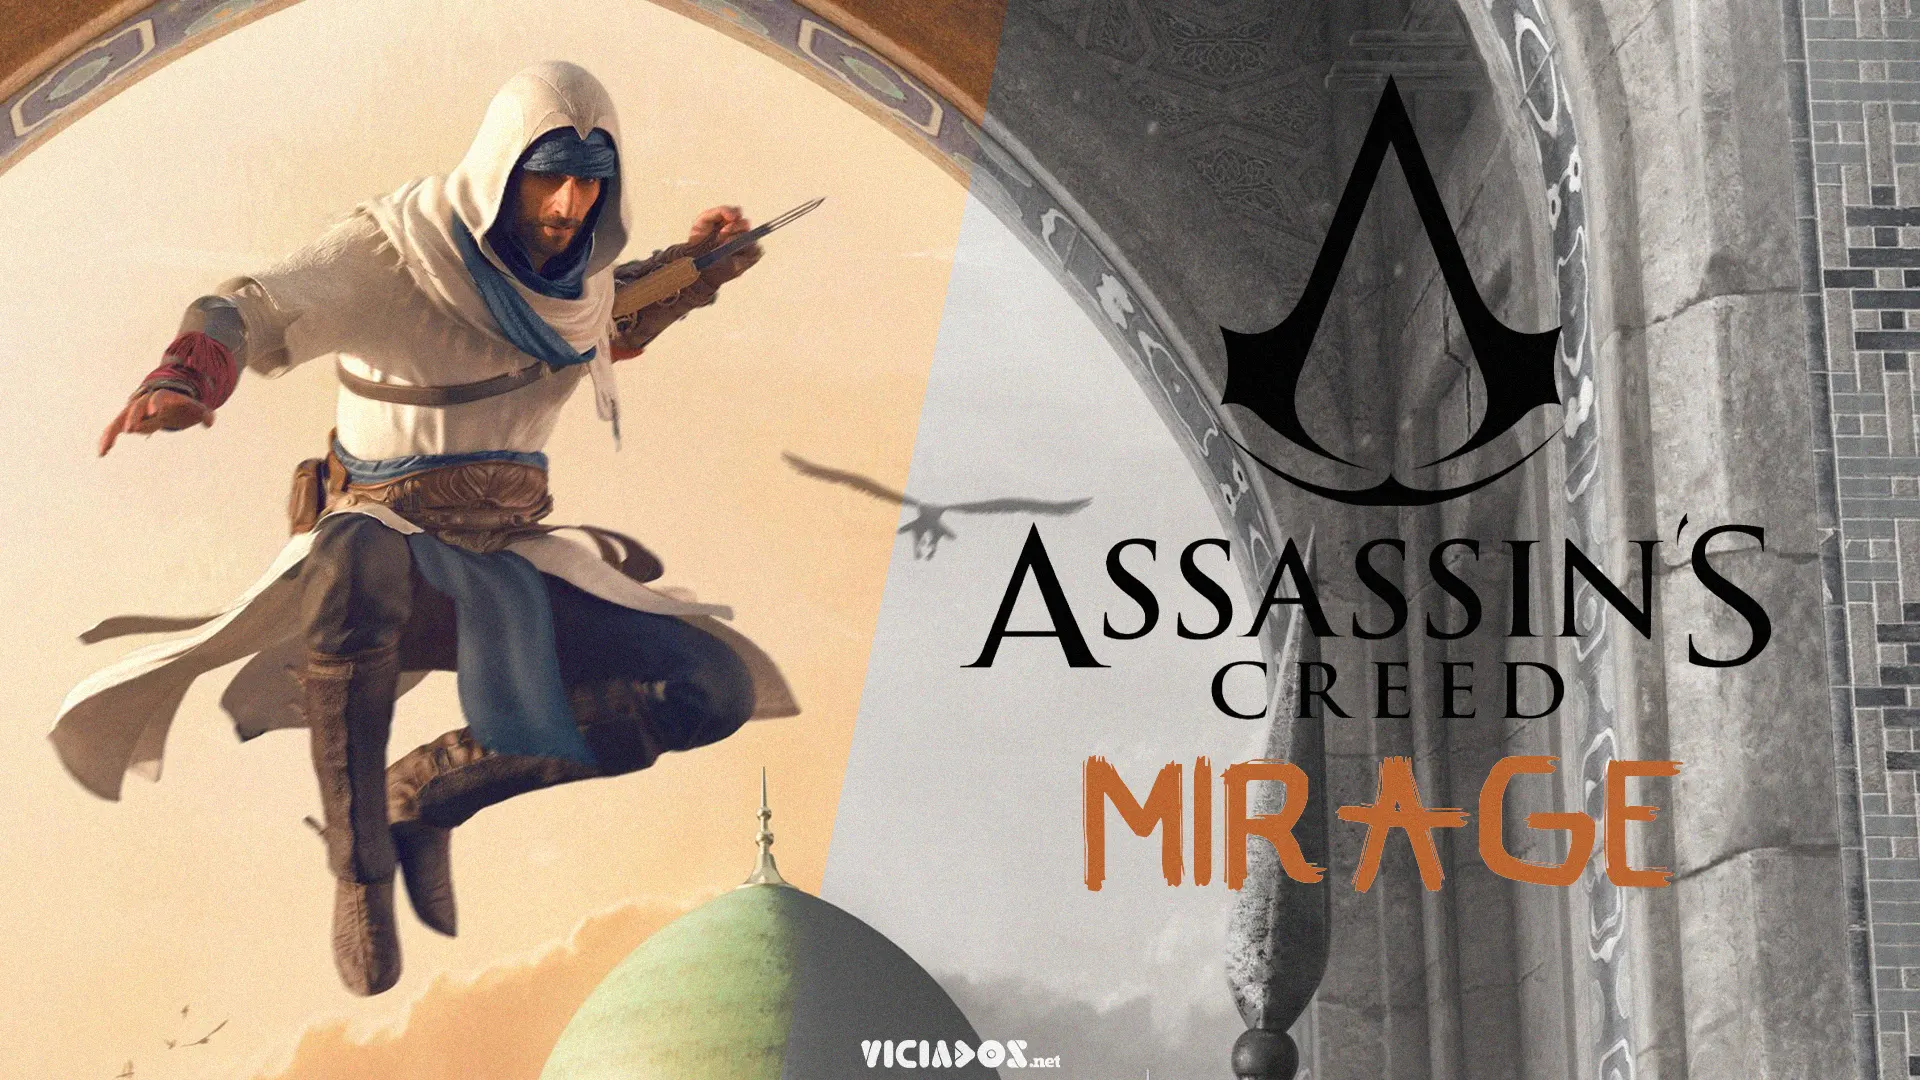 Assassin's Creed: Mirage | Vazam algumas informações sobre o novo título 2023 Viciados